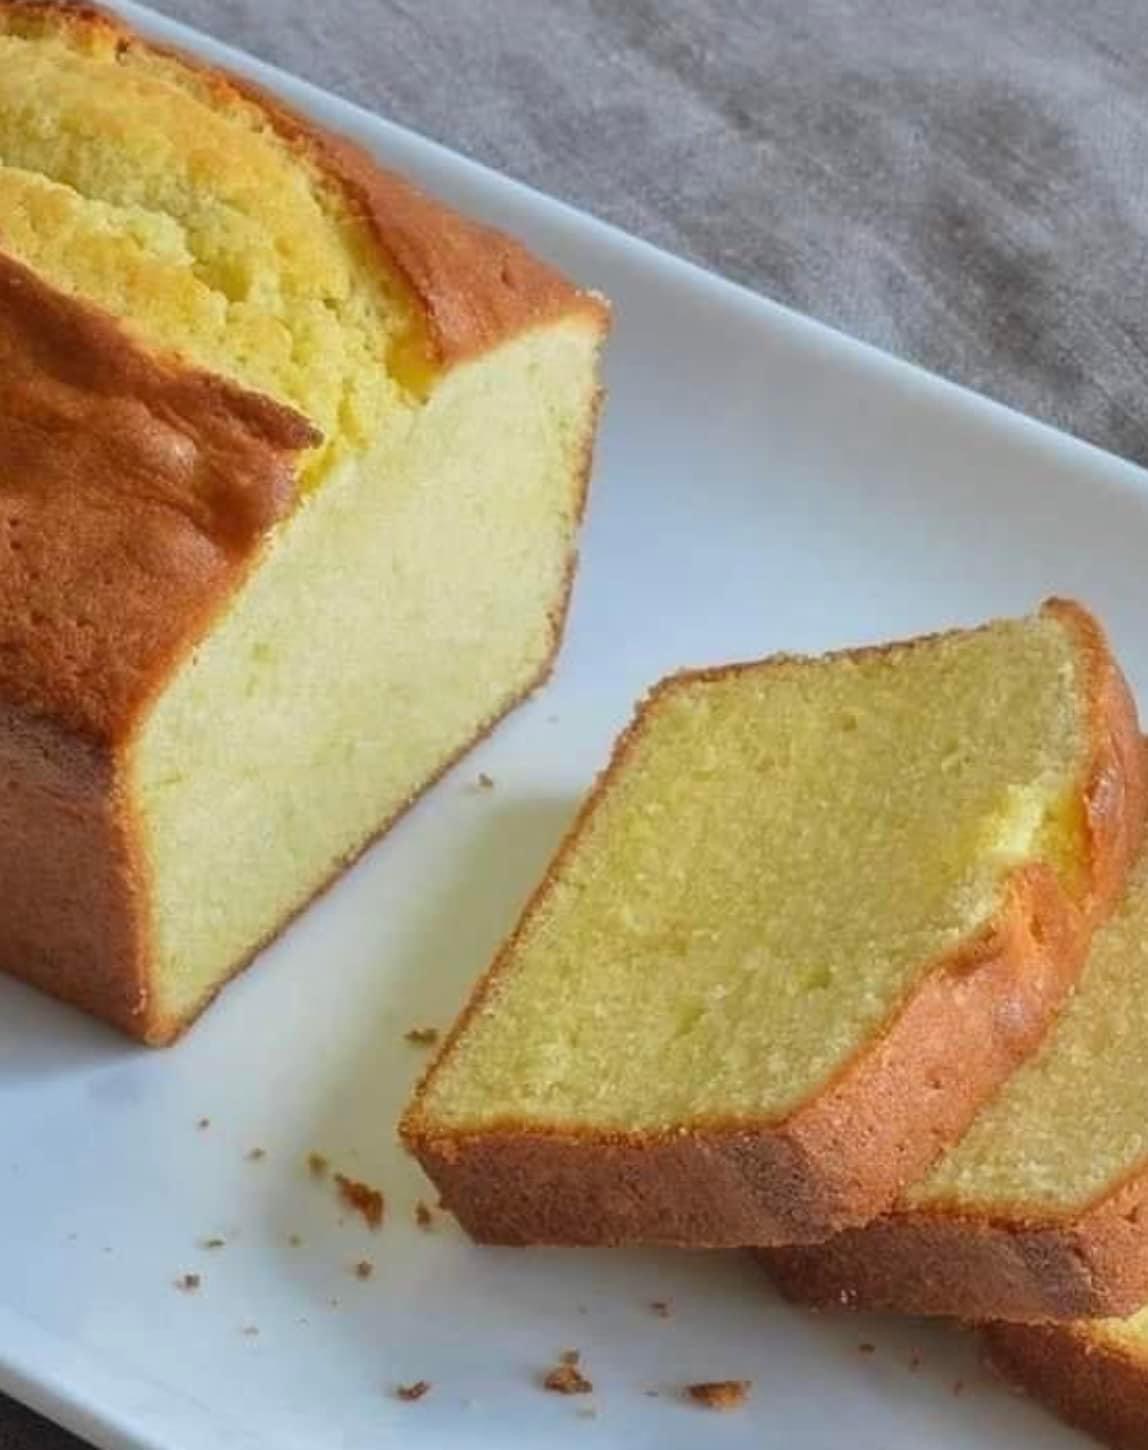 Soft Butter Cake - බටර් කේක් පුළුන් වගේ සැහැල්ලුවට හදමු